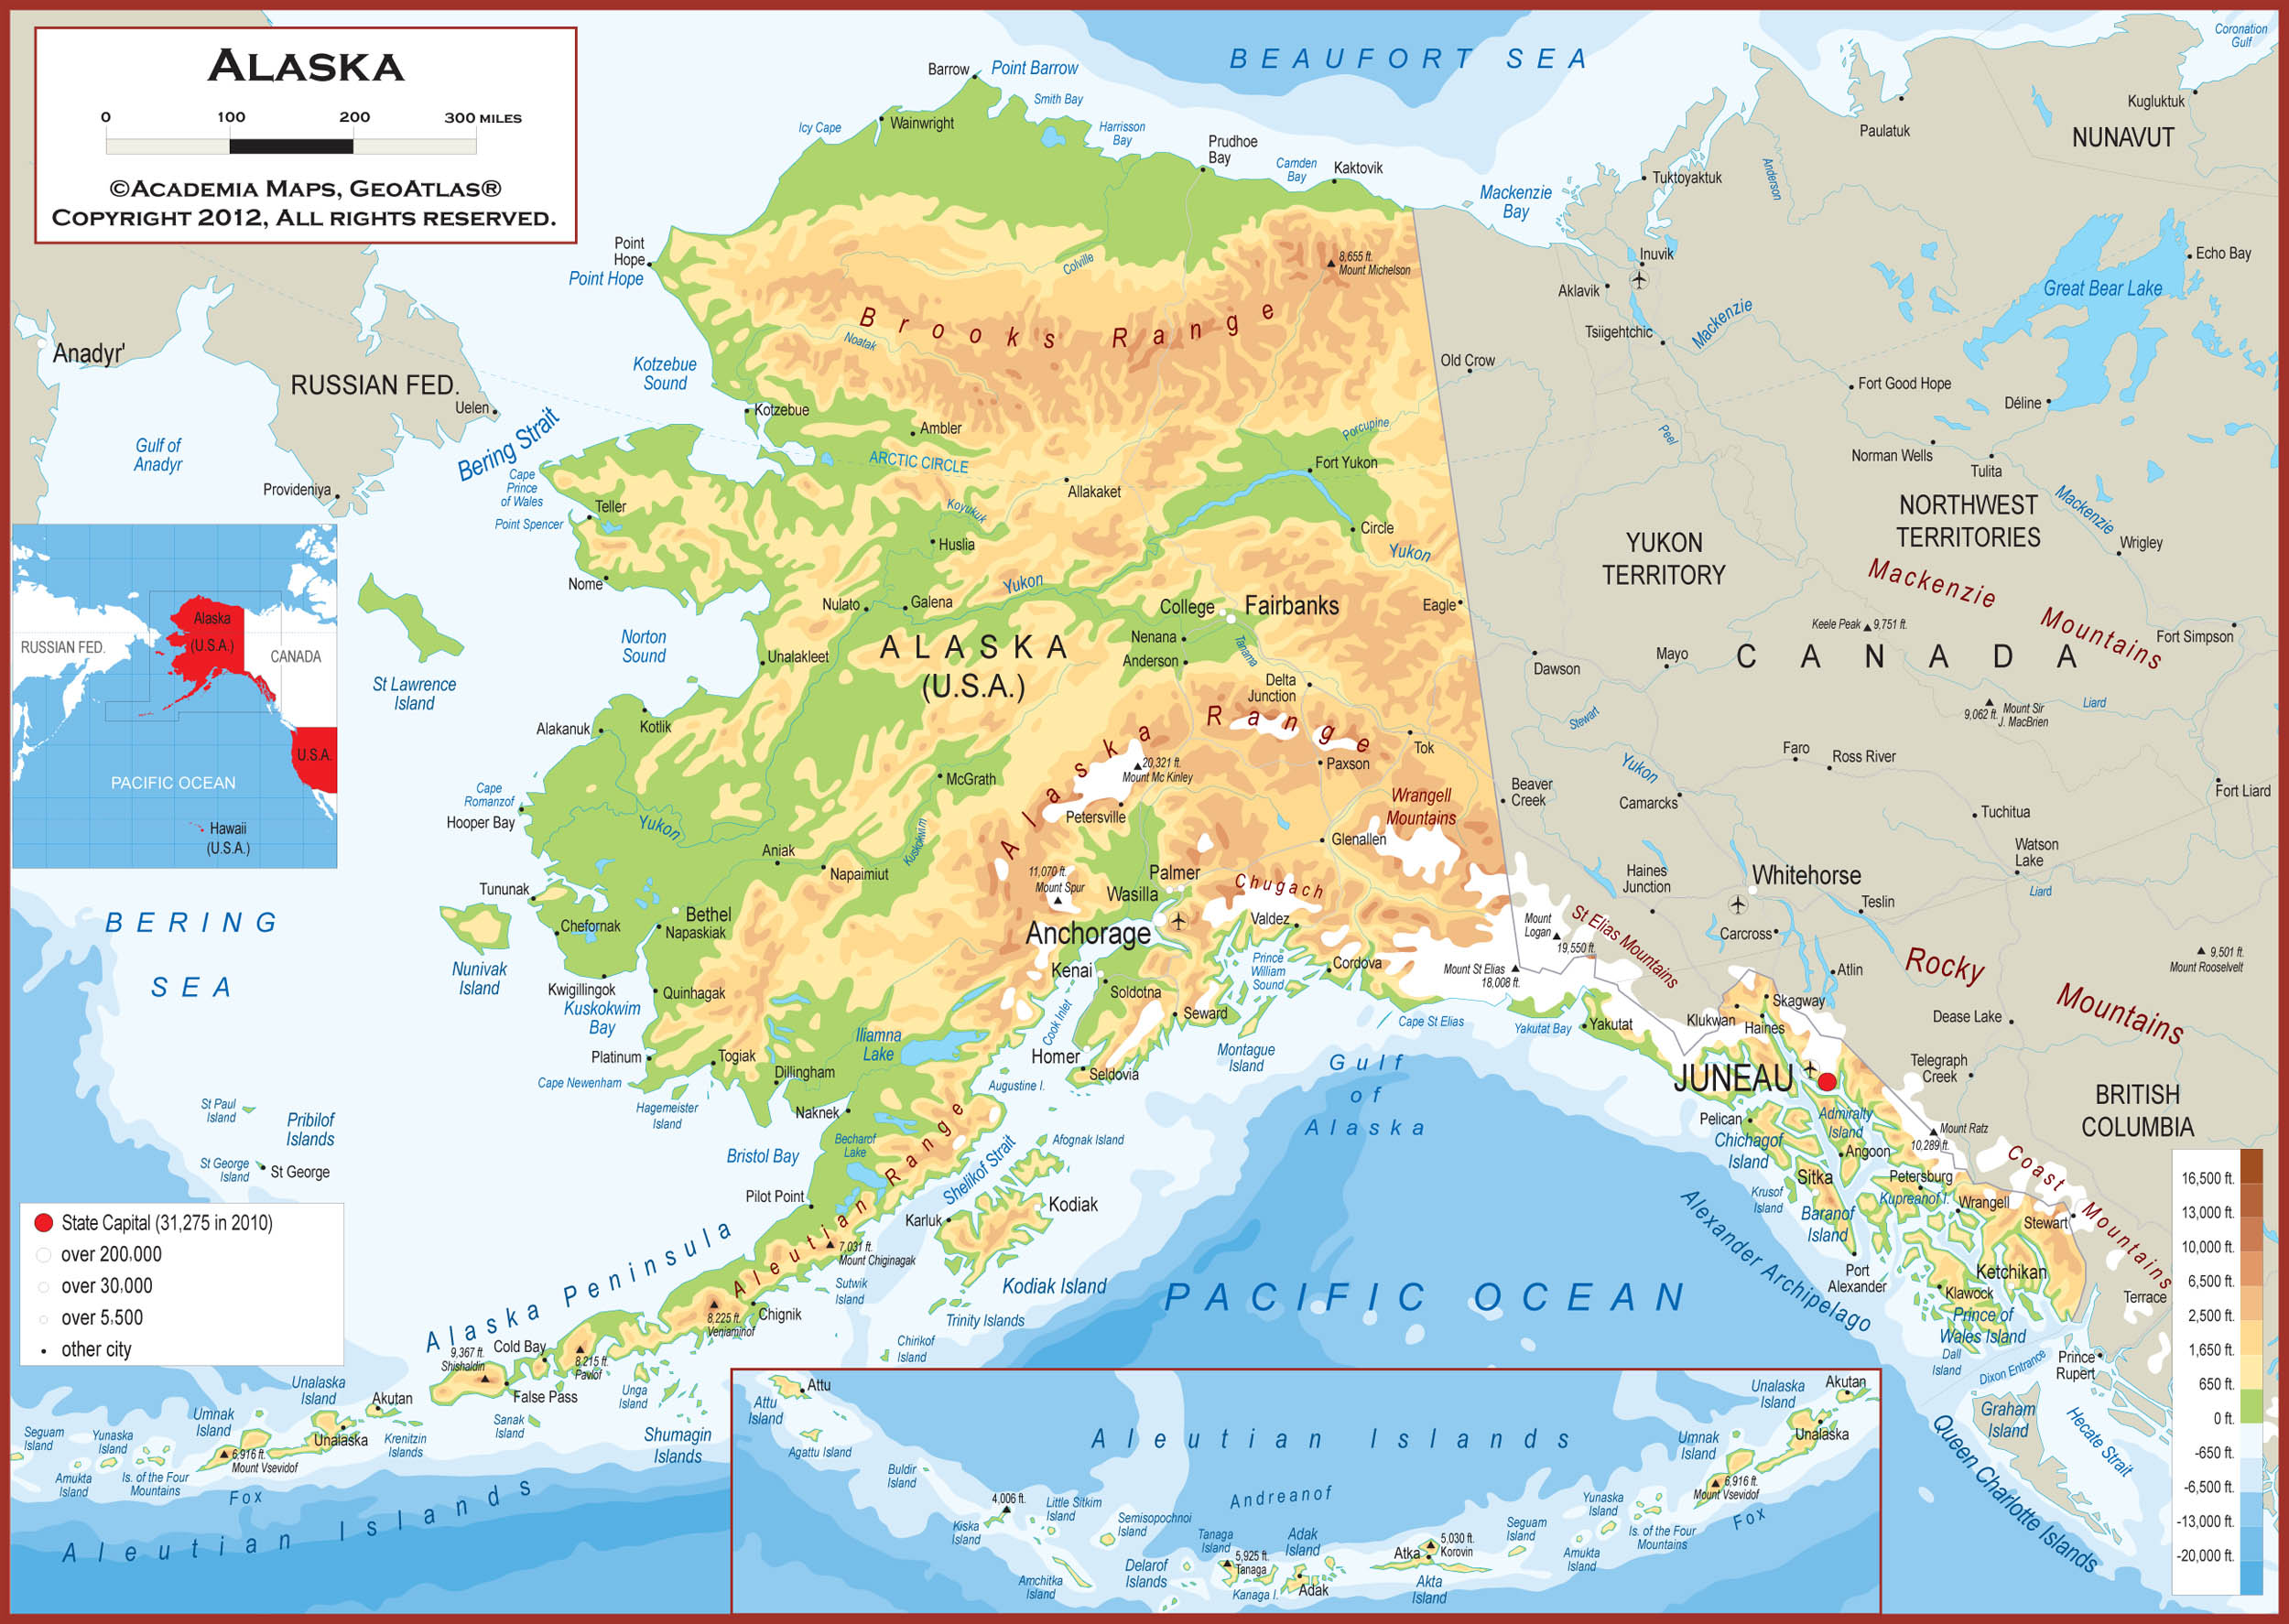 Alaska Map 575a76f510f9b 